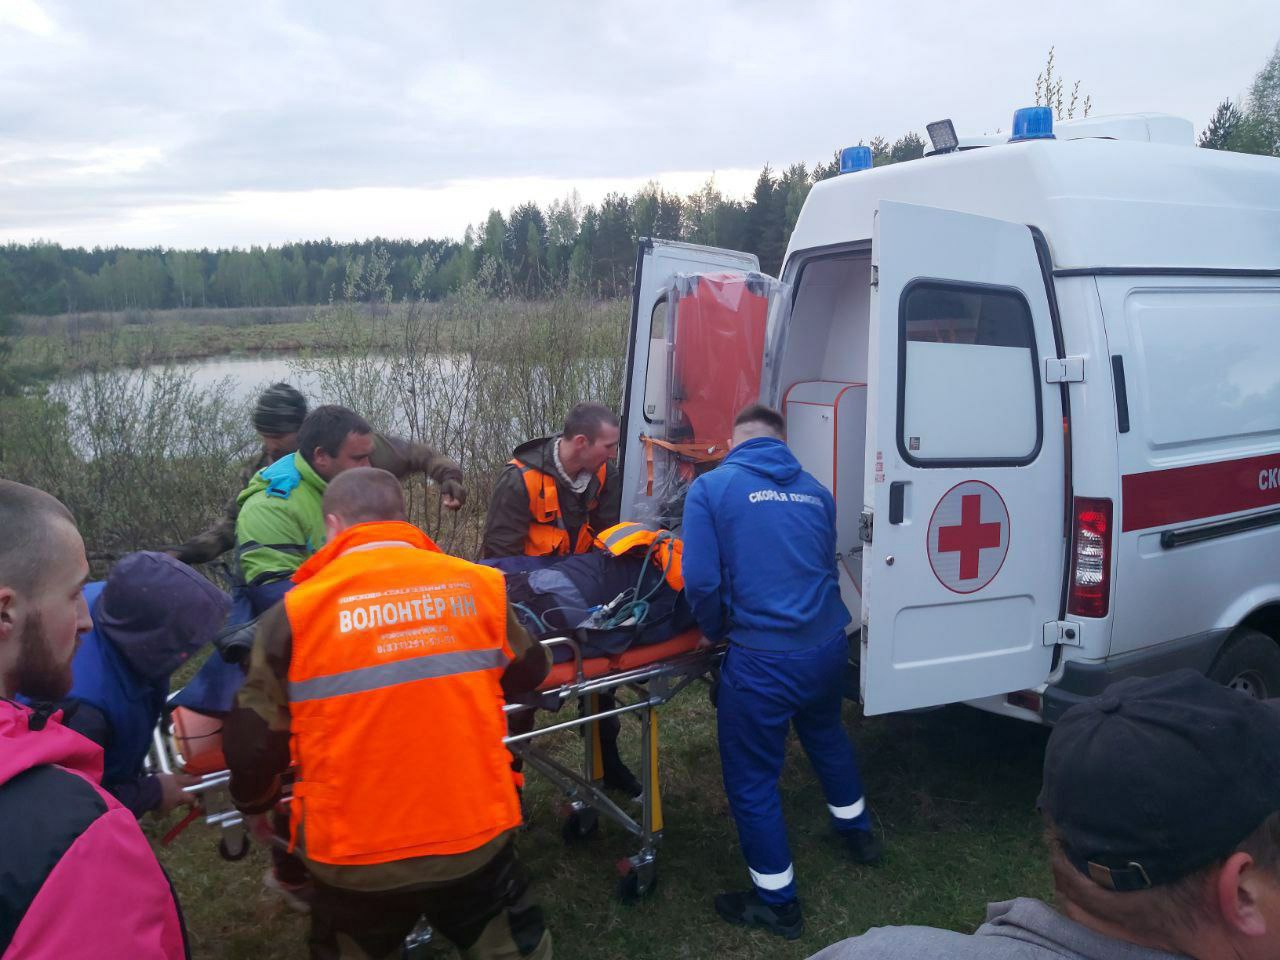 Пропавший в Нижегородской области мужчина найден живым, но умер по дороге в больницу